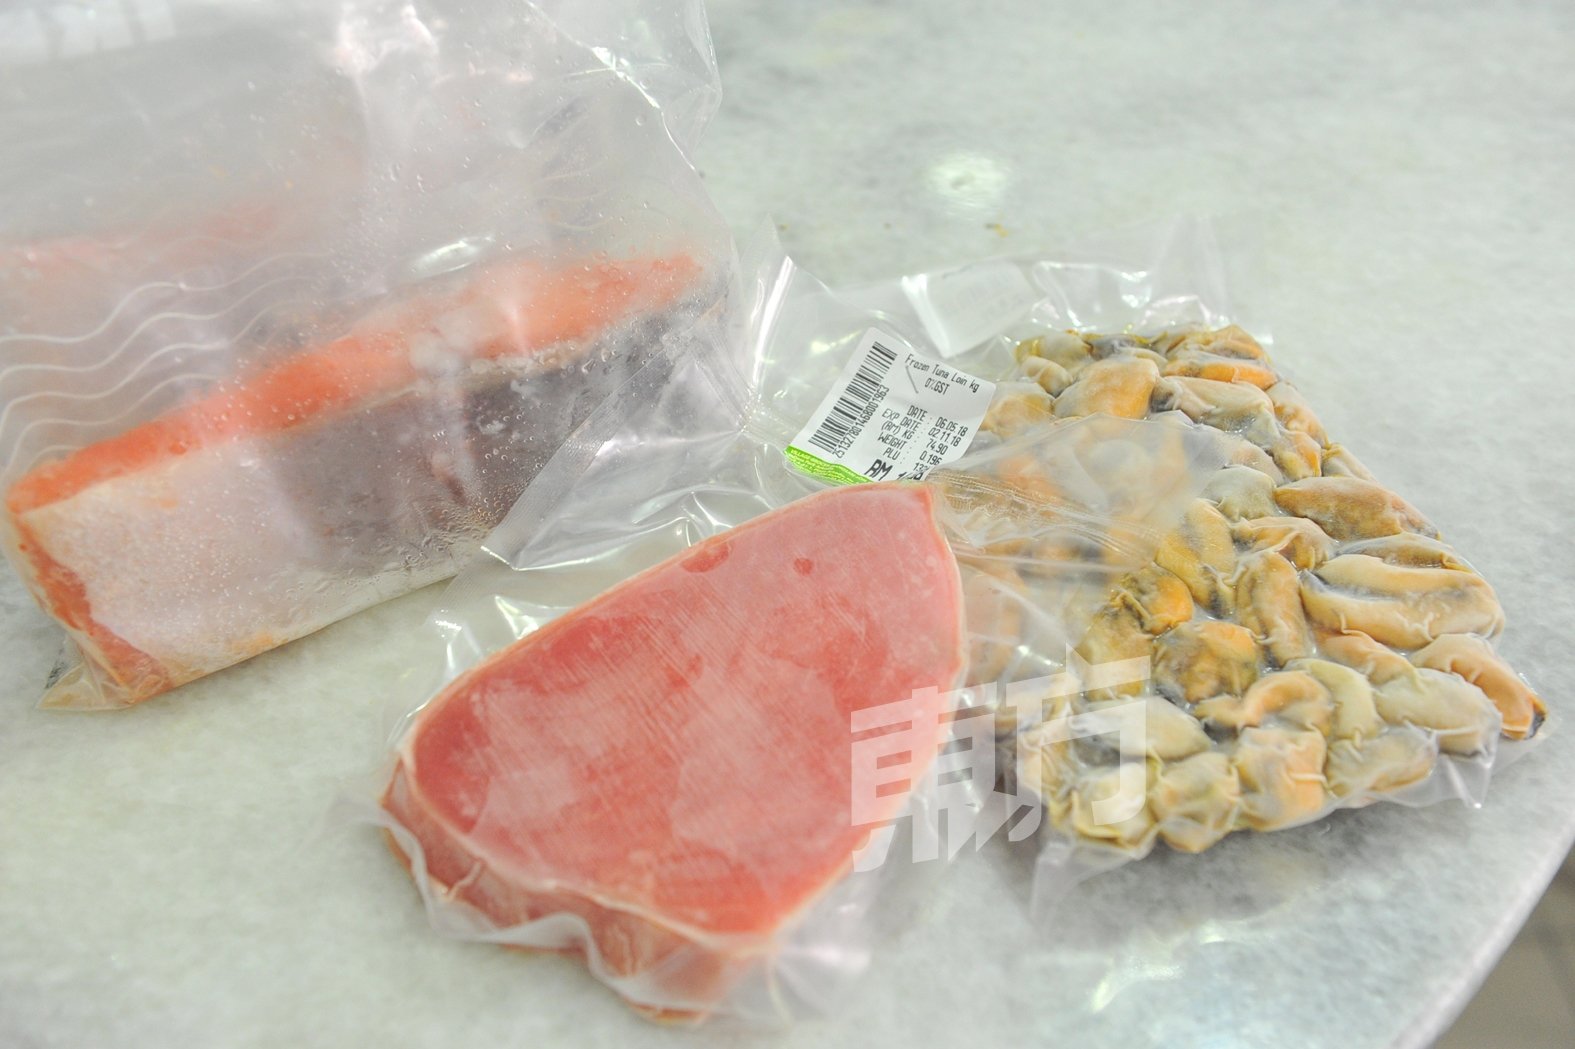 黄炜霖为毛孩们准备的食材包括三文鱼和淡菜。